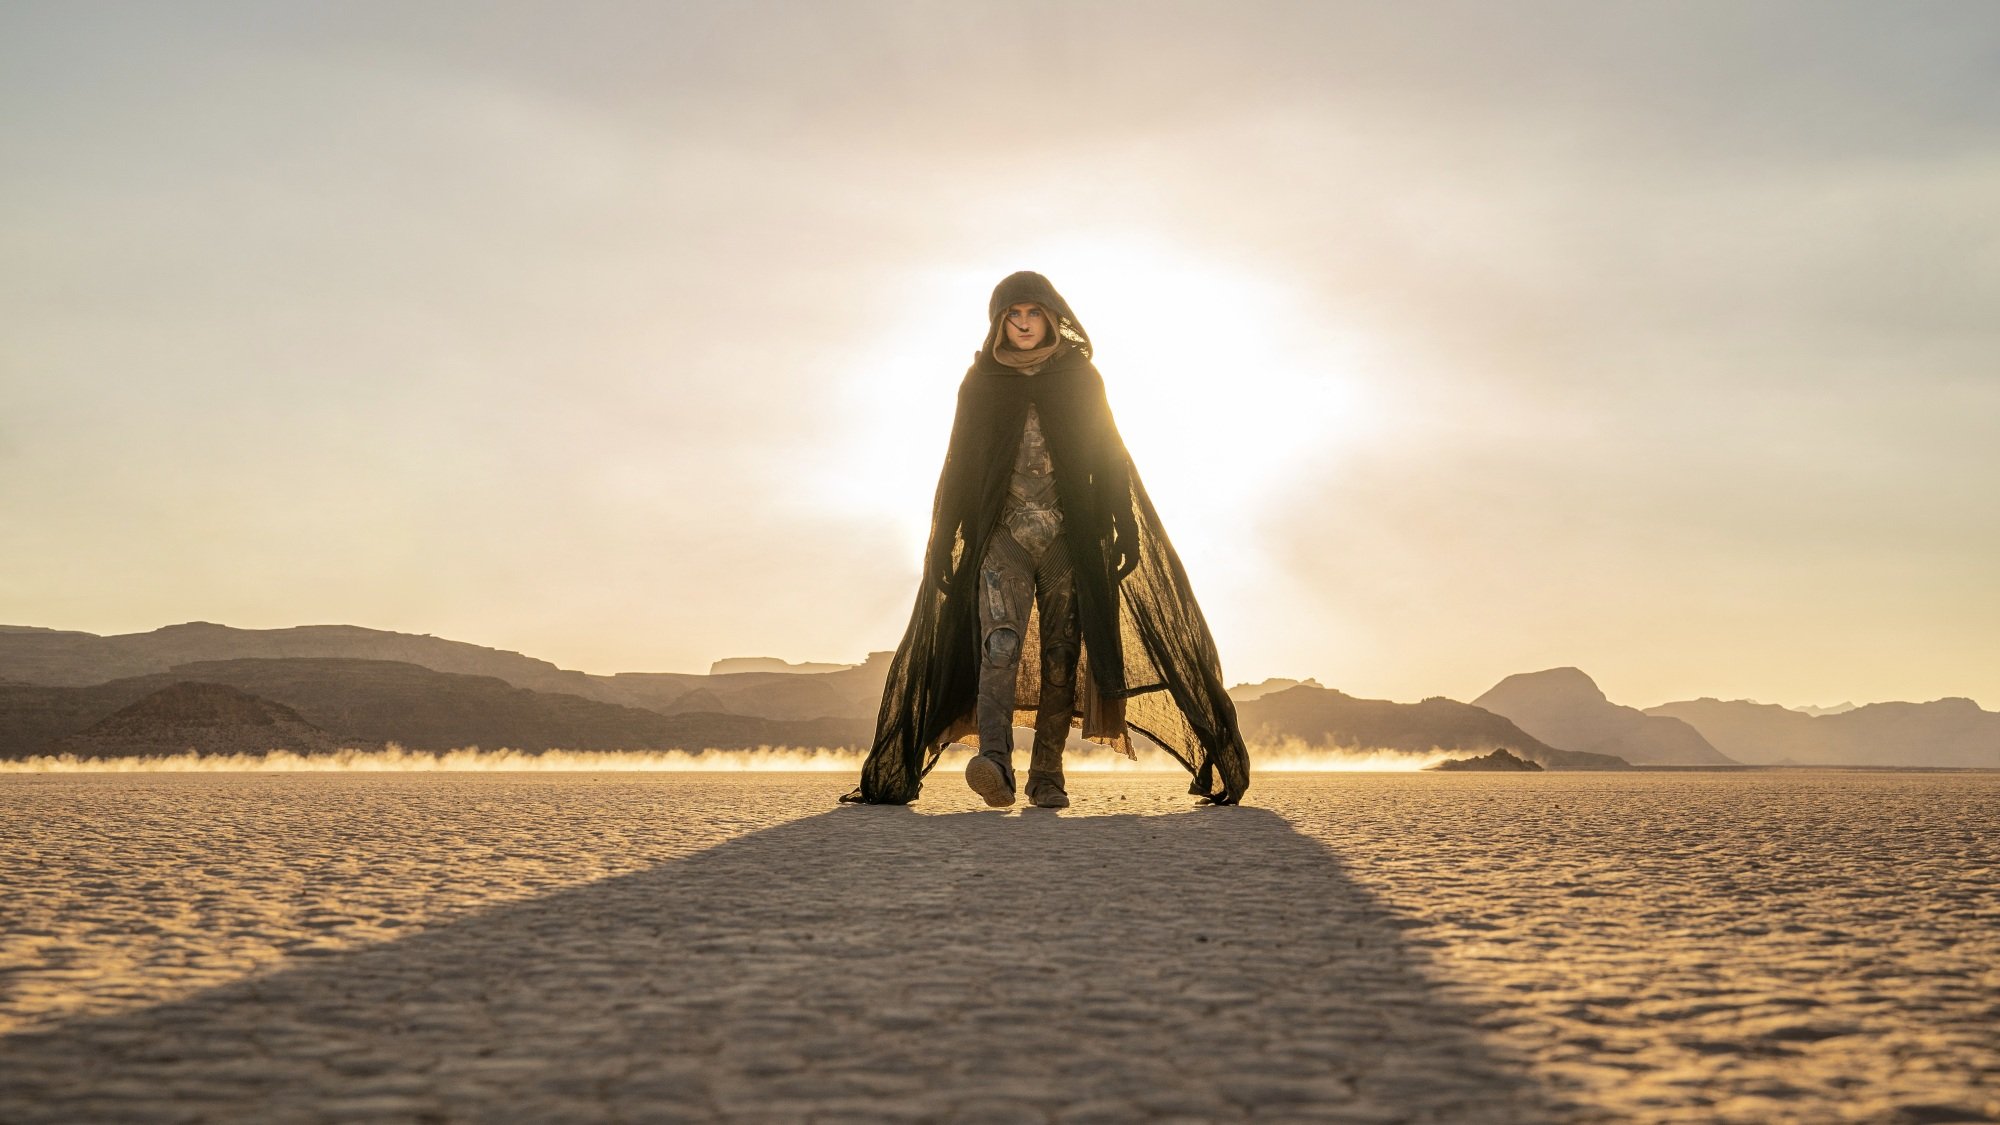 Paul Atryda spacerujący po pustyni w płaszczu i filtrfraku.